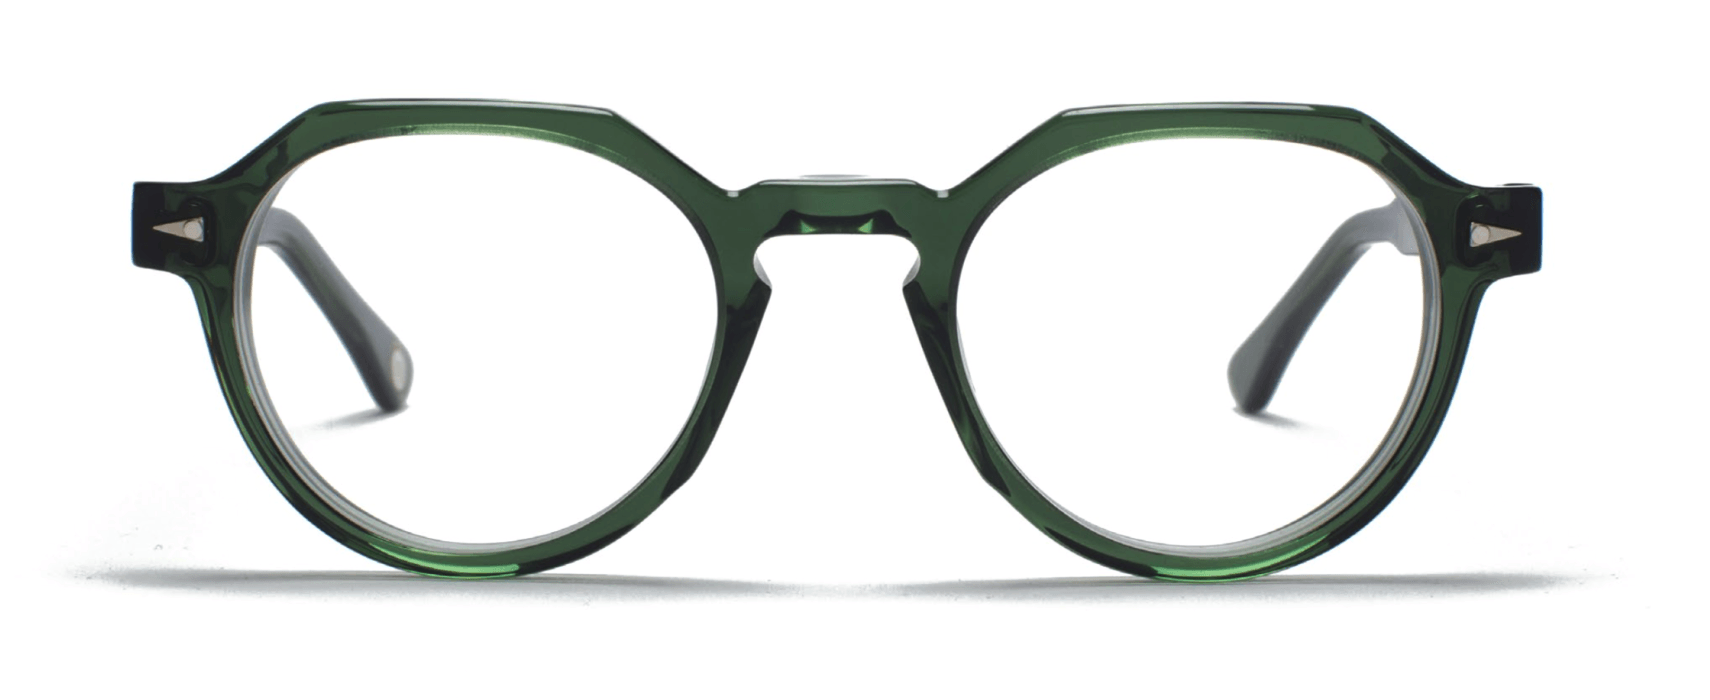 TAVAT frame glasses